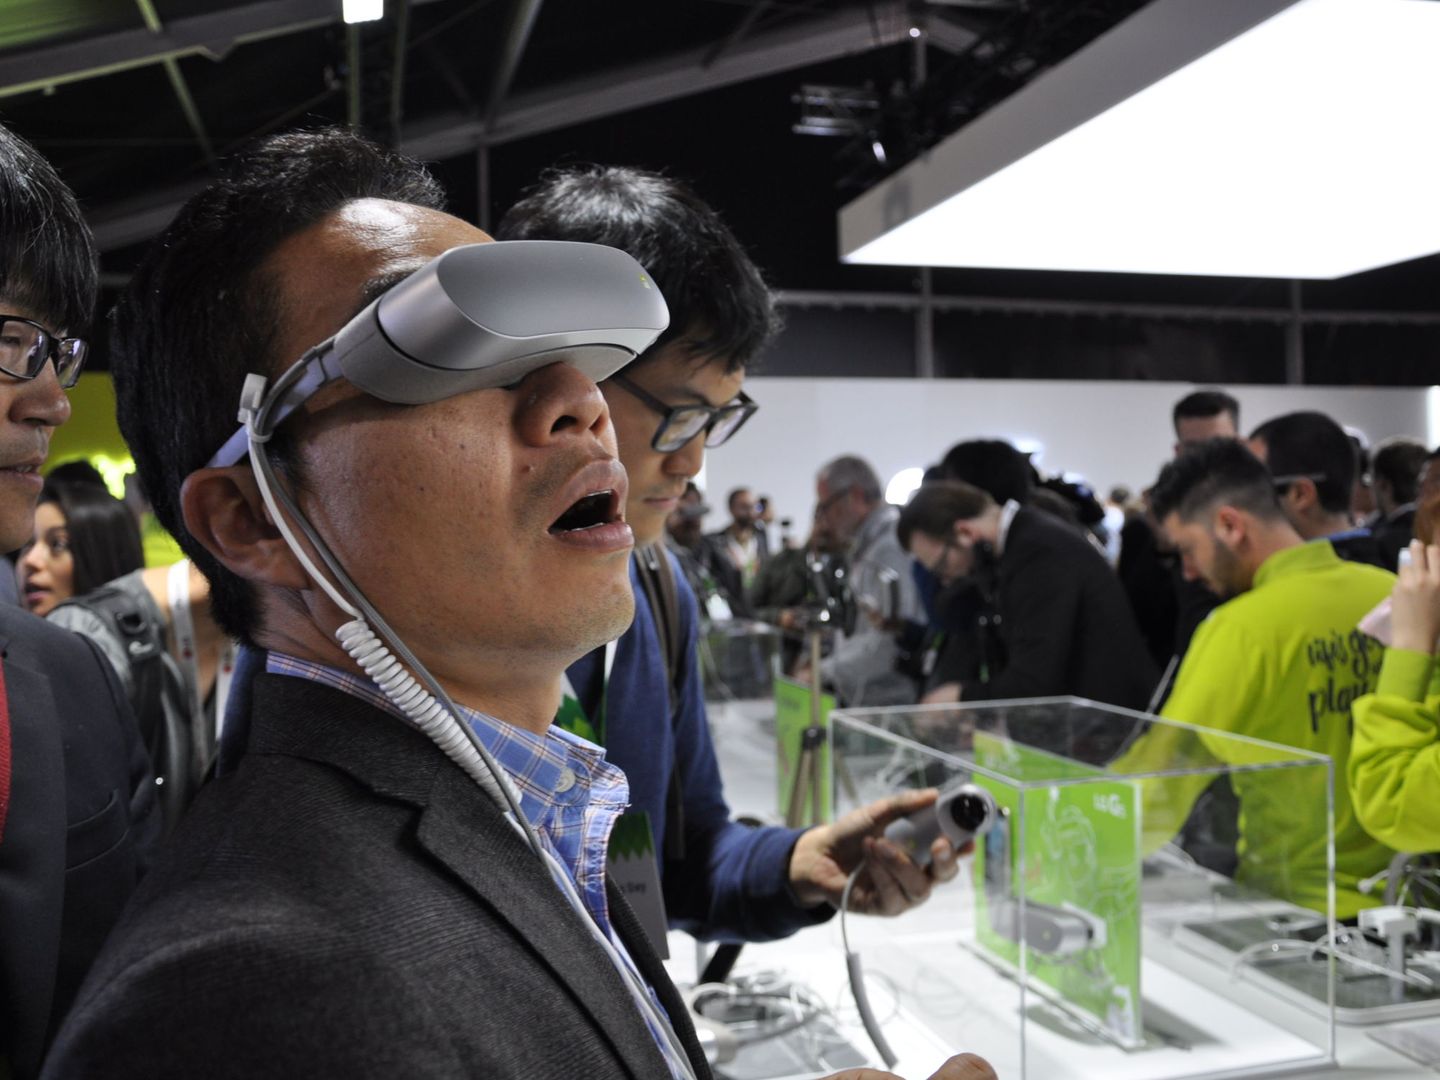 El nuevo visor de realidad virtual de LG. (Foto: MAM)